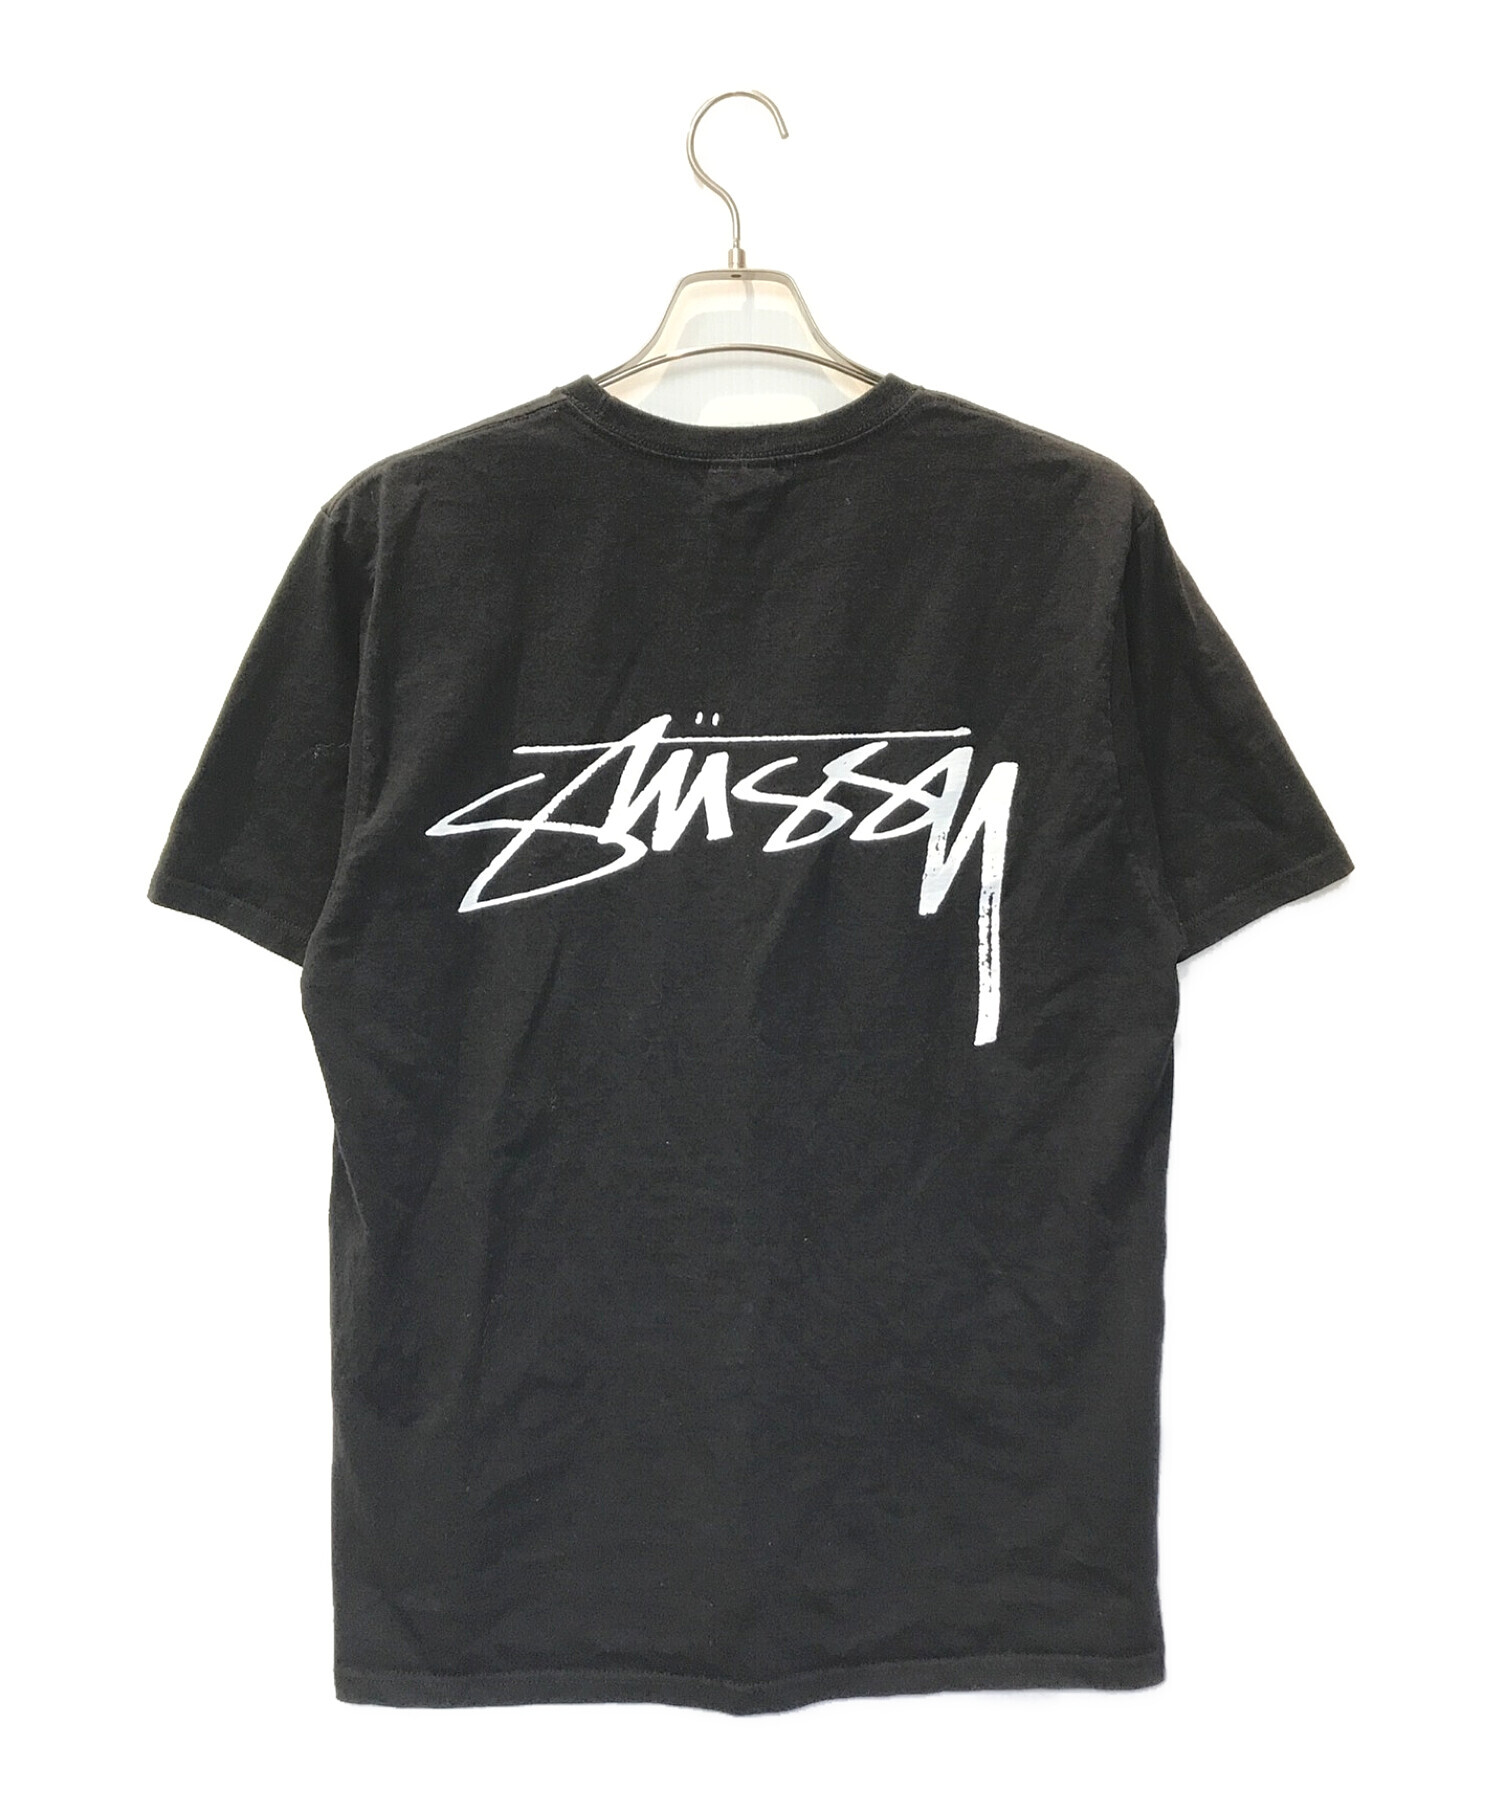 stussy (ステューシー) サーフマンプリントTシャツ ブラック サイズ:M